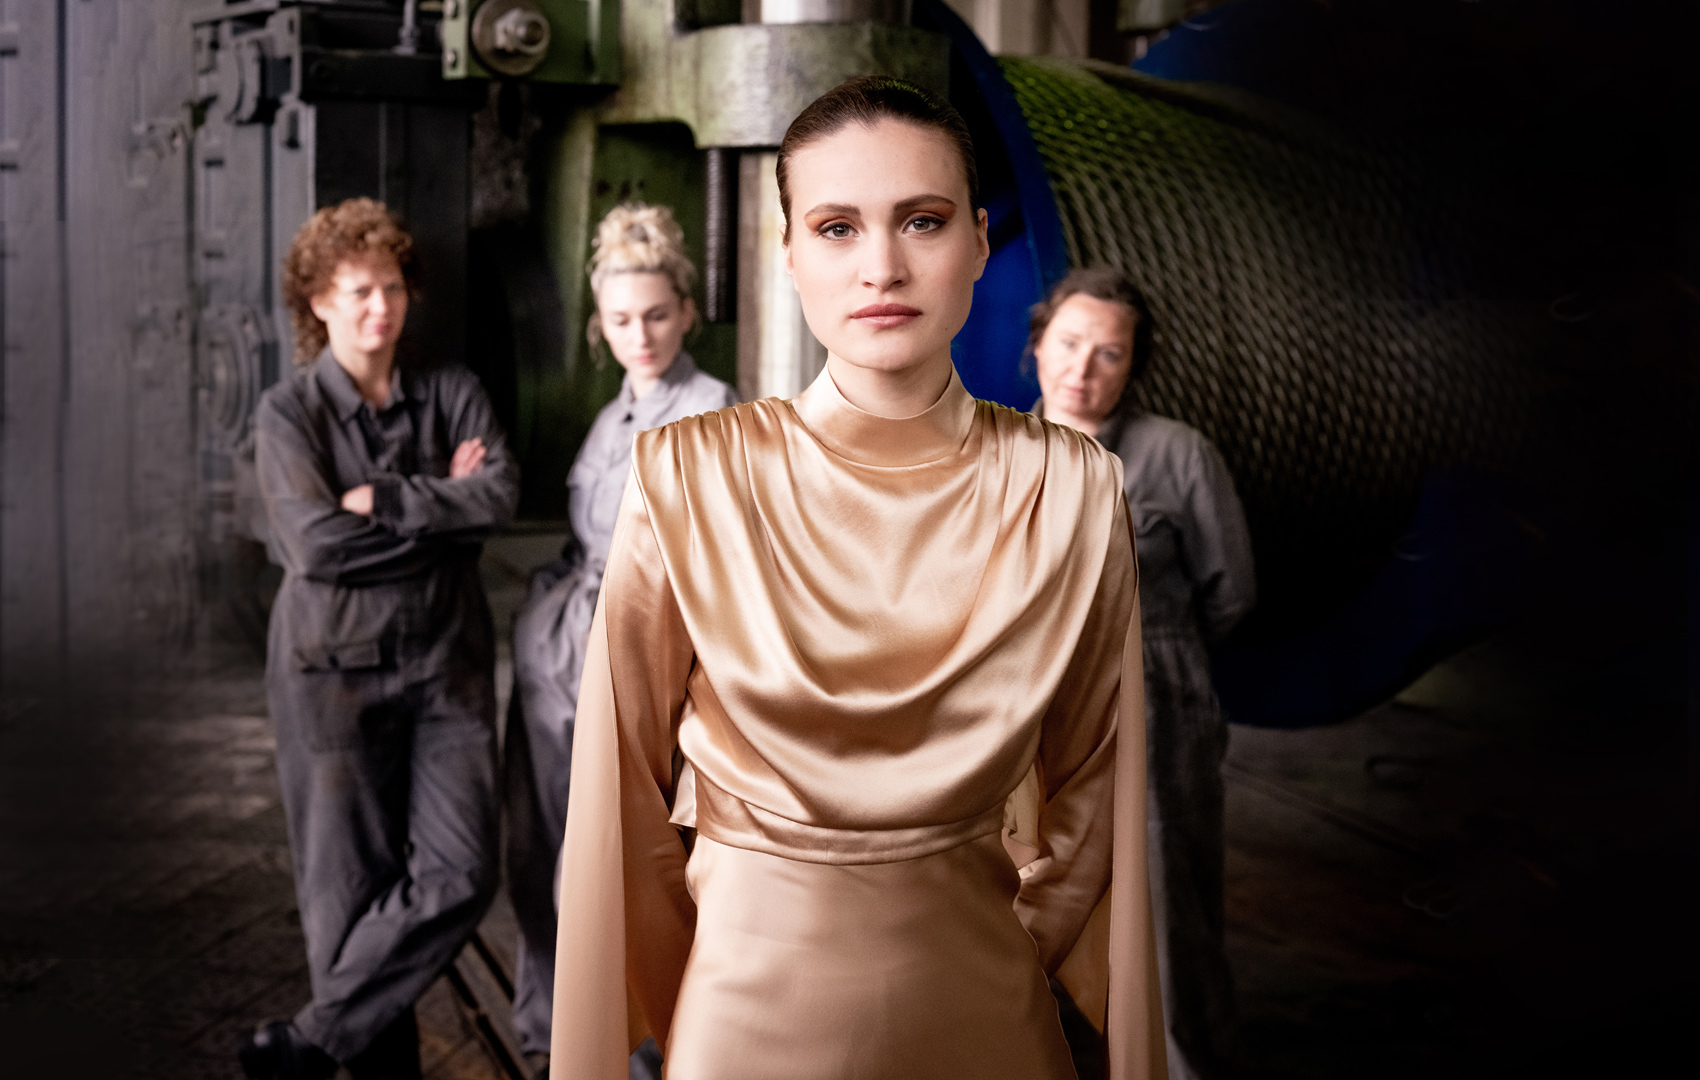 Eine junge Frau in chicen goldenen Kleid steht in einer Fabrik. Im Hintergrund sind ihre drei Kolleginnen in grauen Overalls zu sehen.